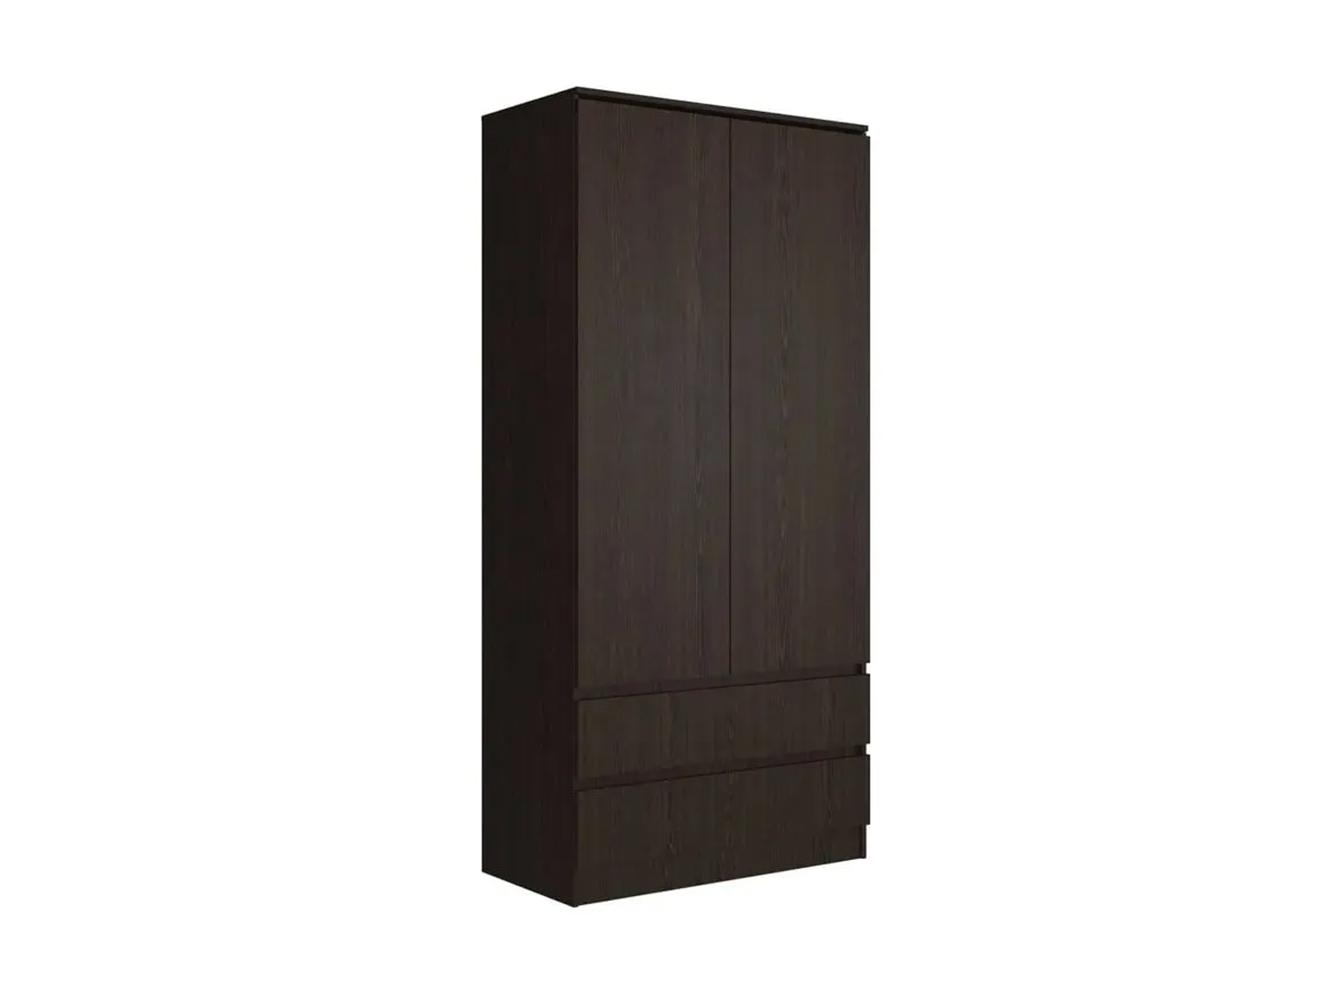 Распашной шкаф Мальм 313 brown ИКЕА (IKEA) изображение товара